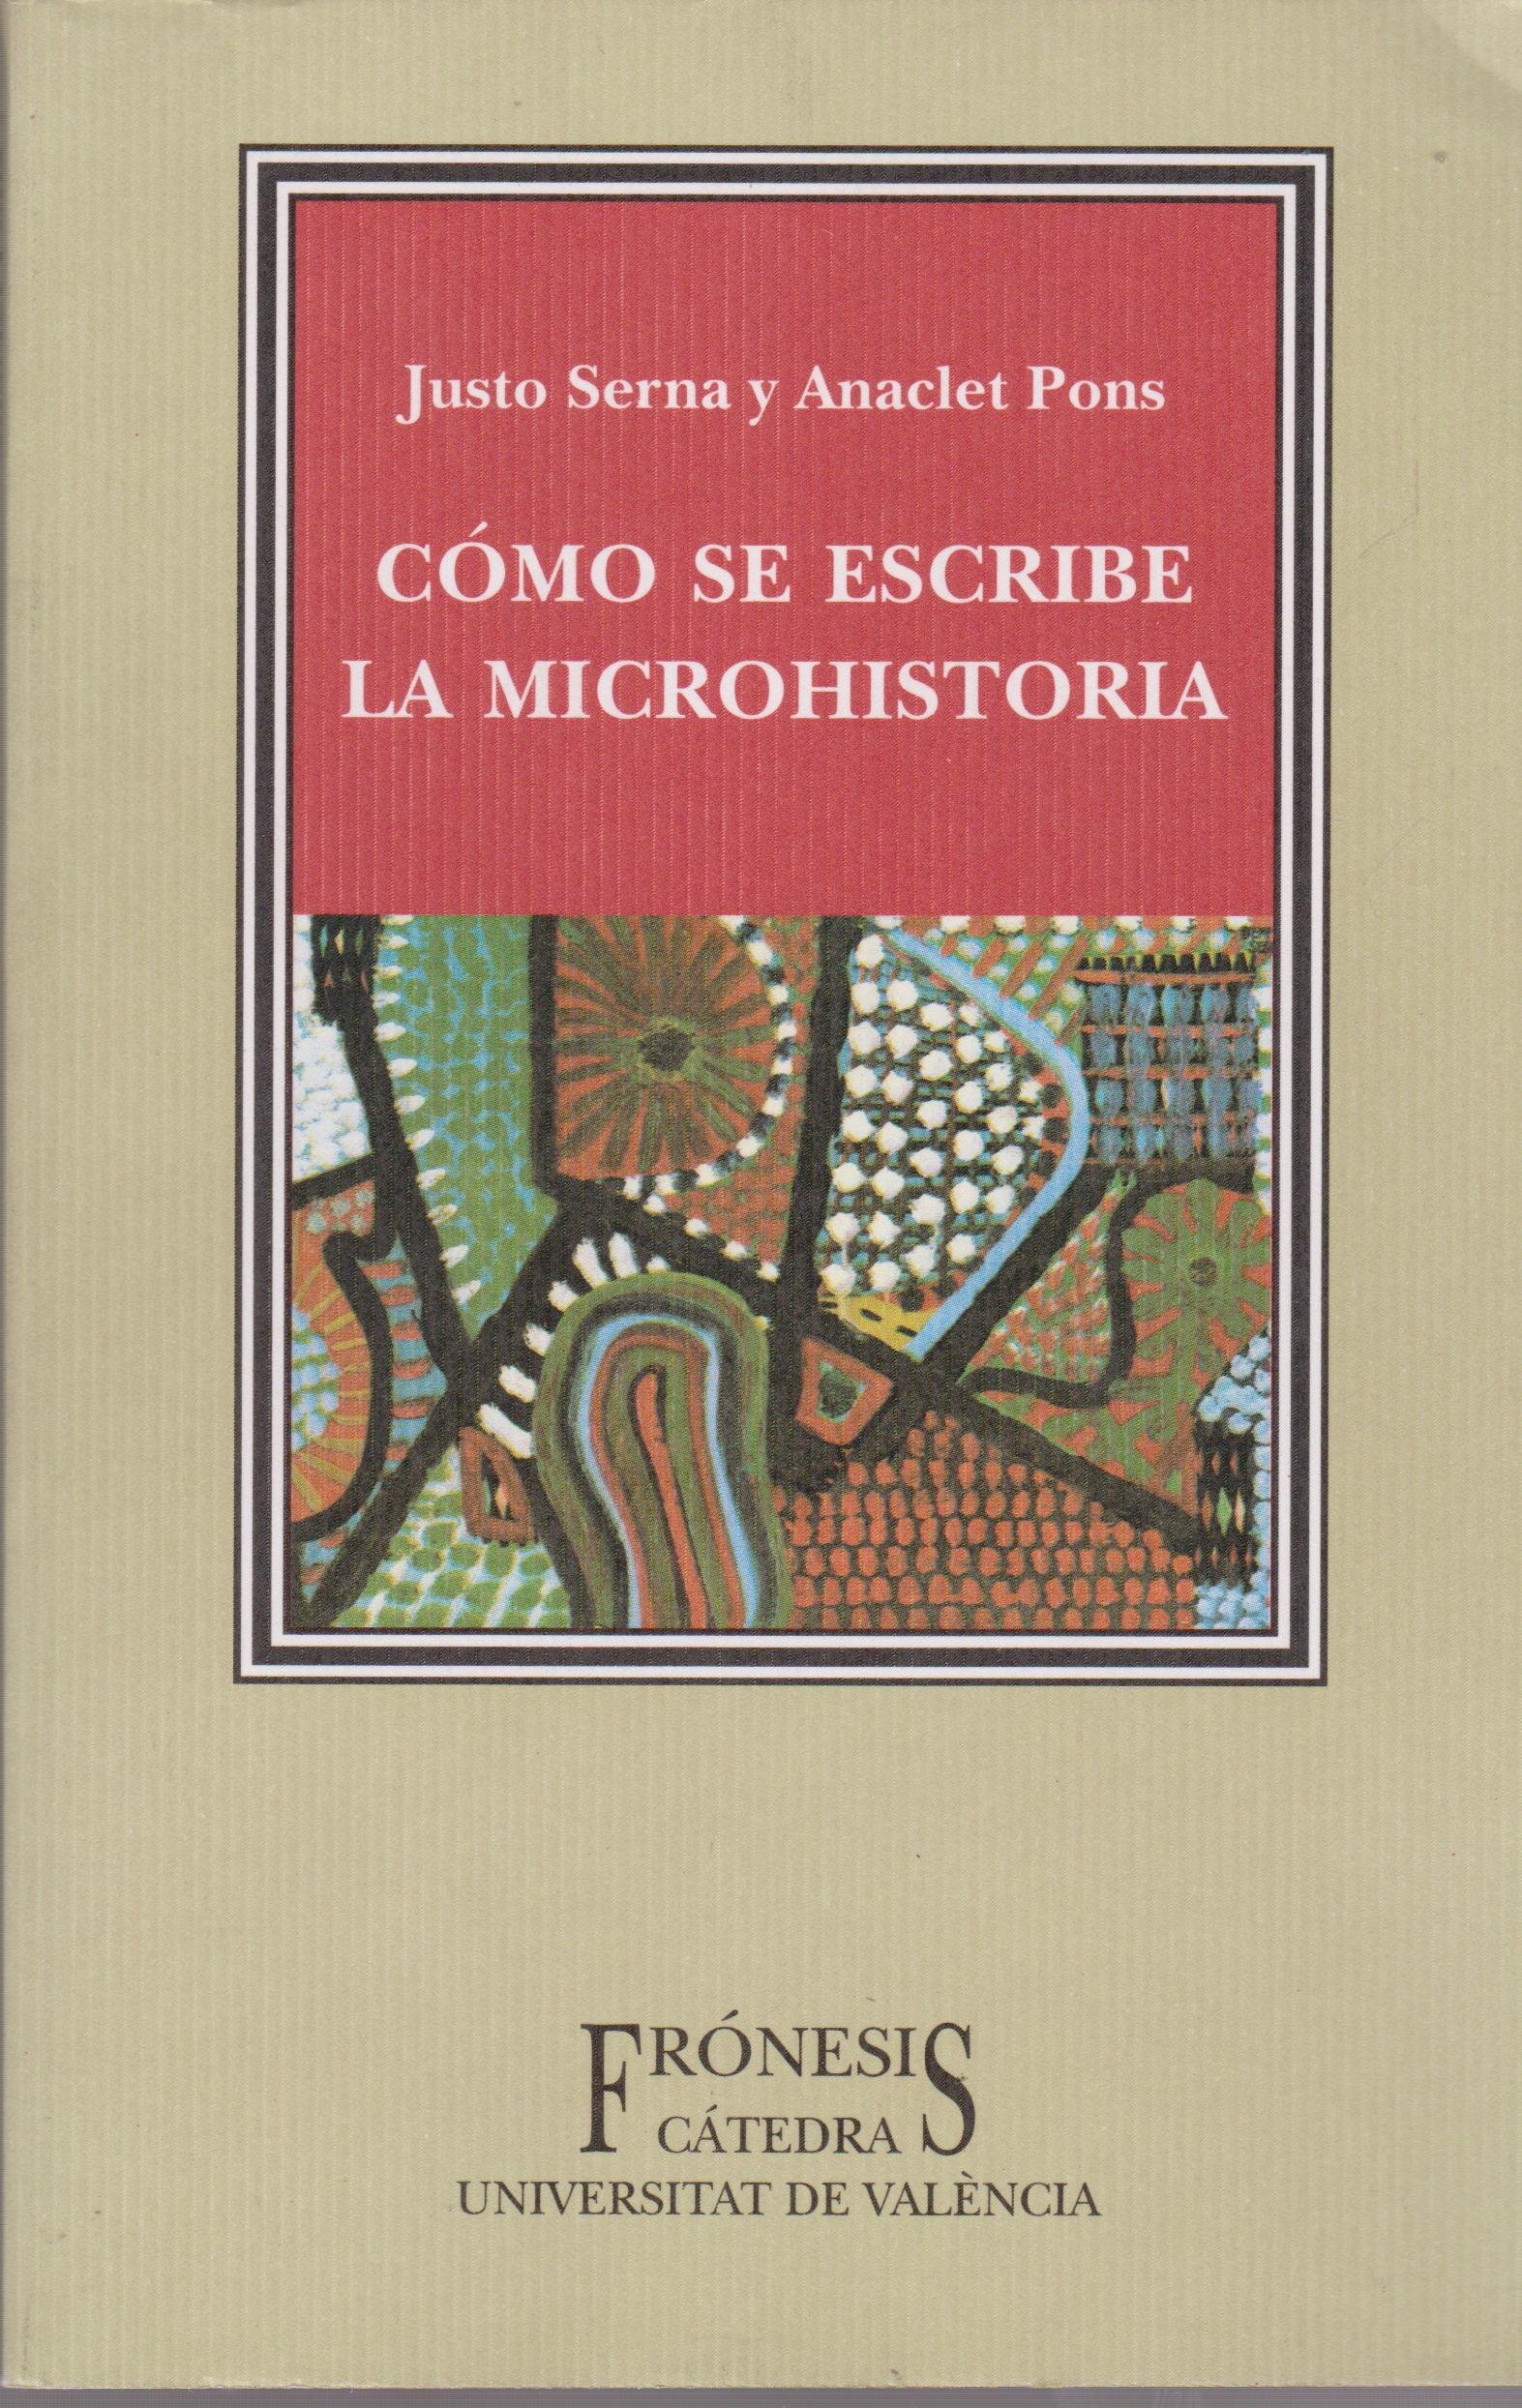 Imagen de portada del libro Cómo se escribe la microhistoria